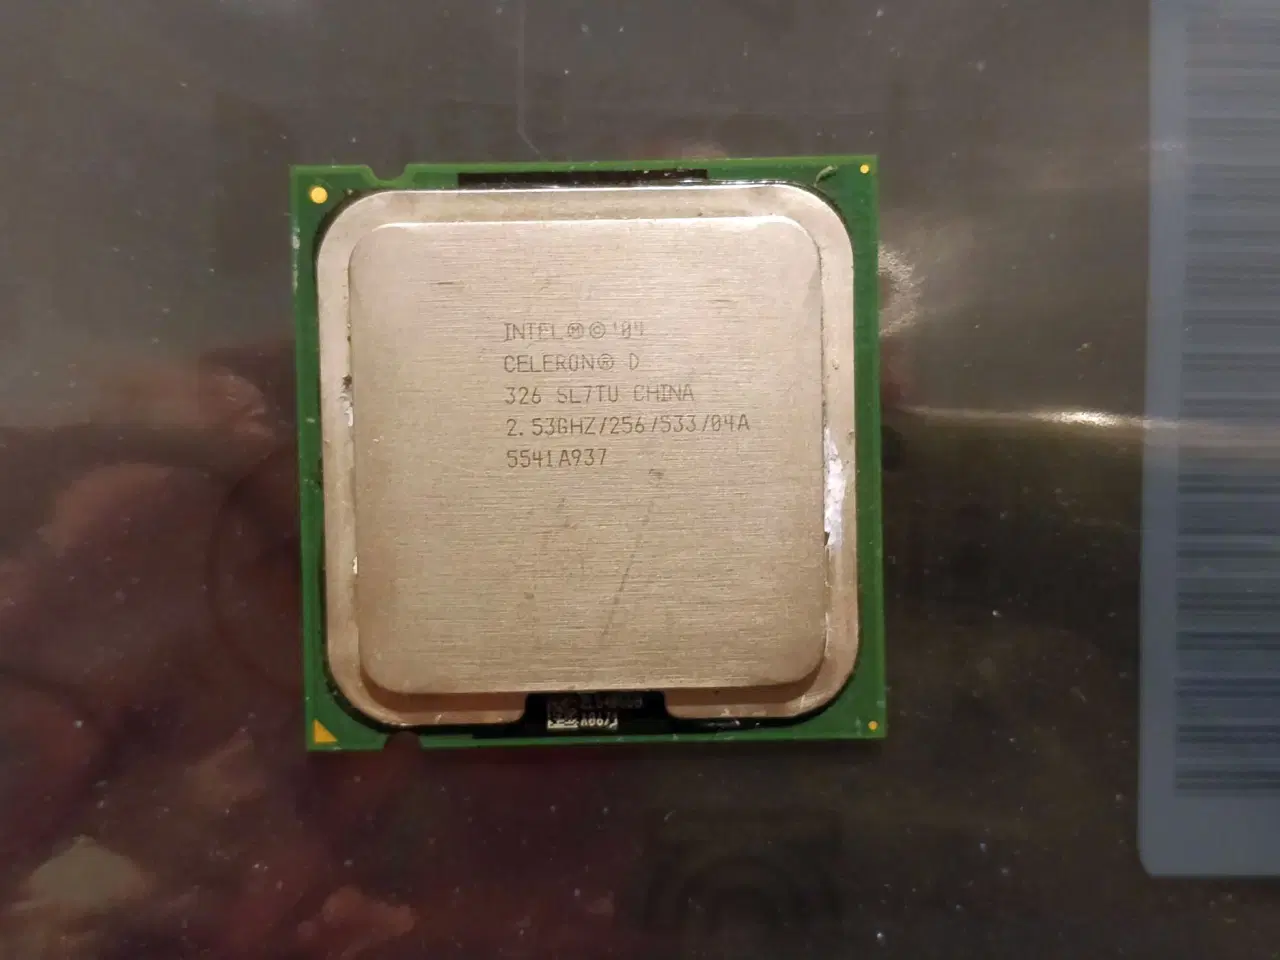 Billede 1 - Intel Celeron D Processor 326